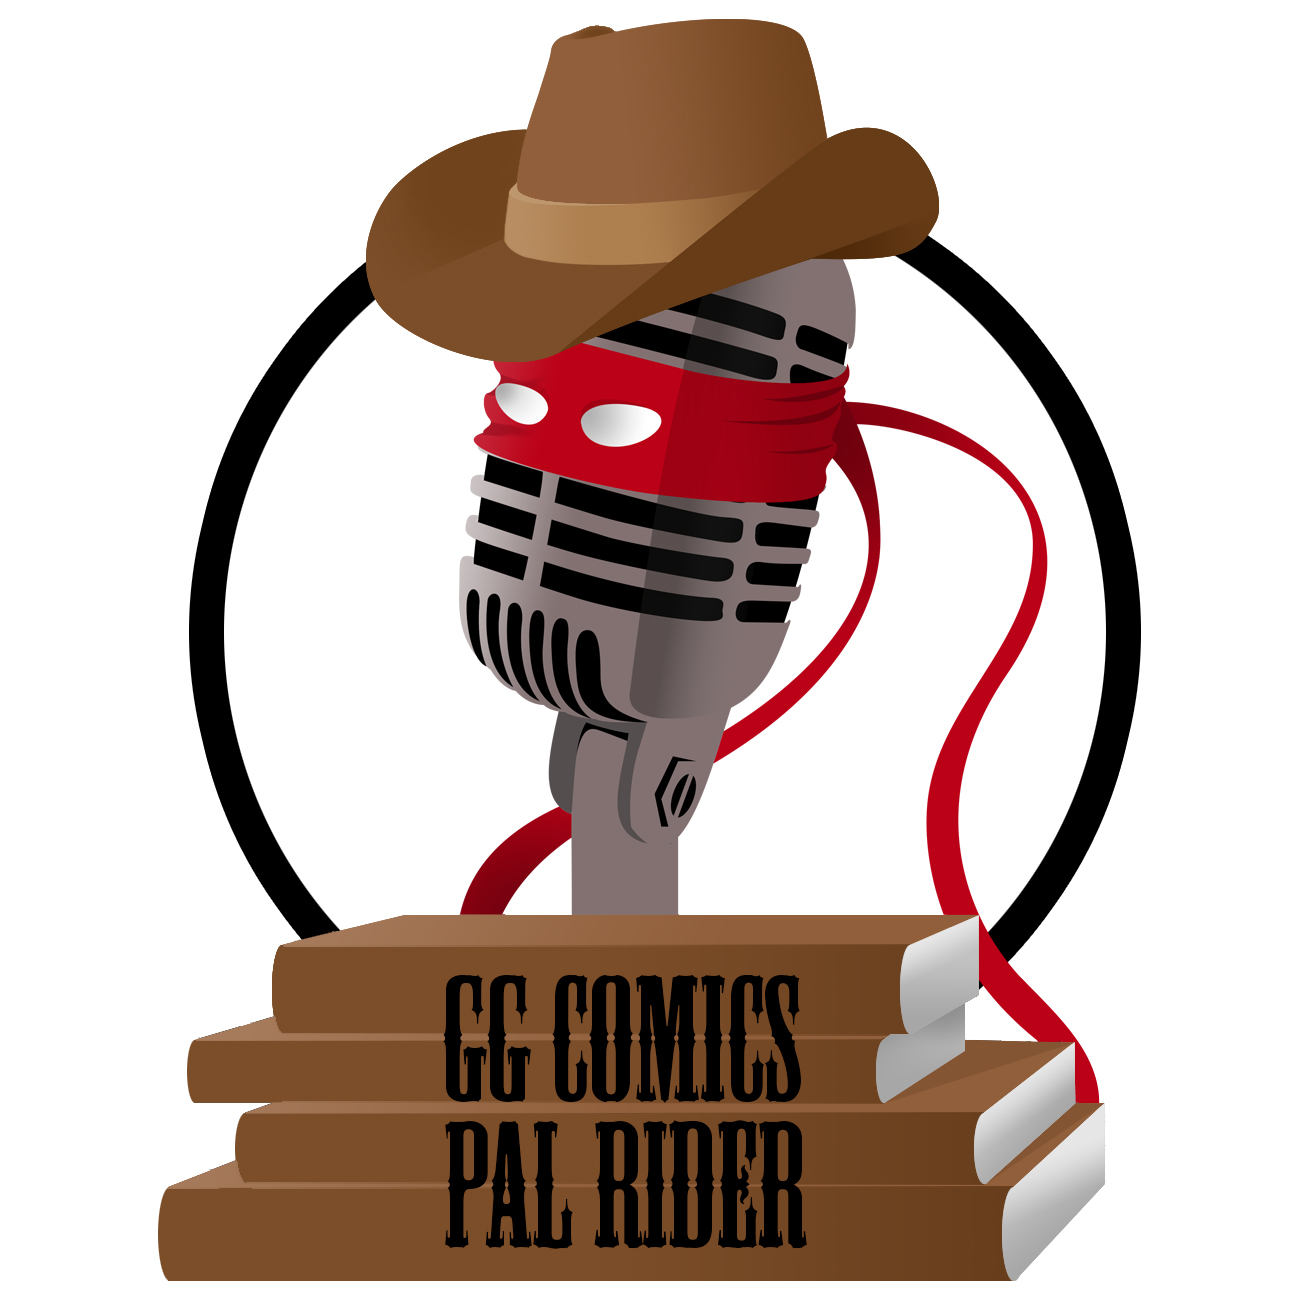 Les GG comics - PAL Rider 05 avec Comics Grincheux